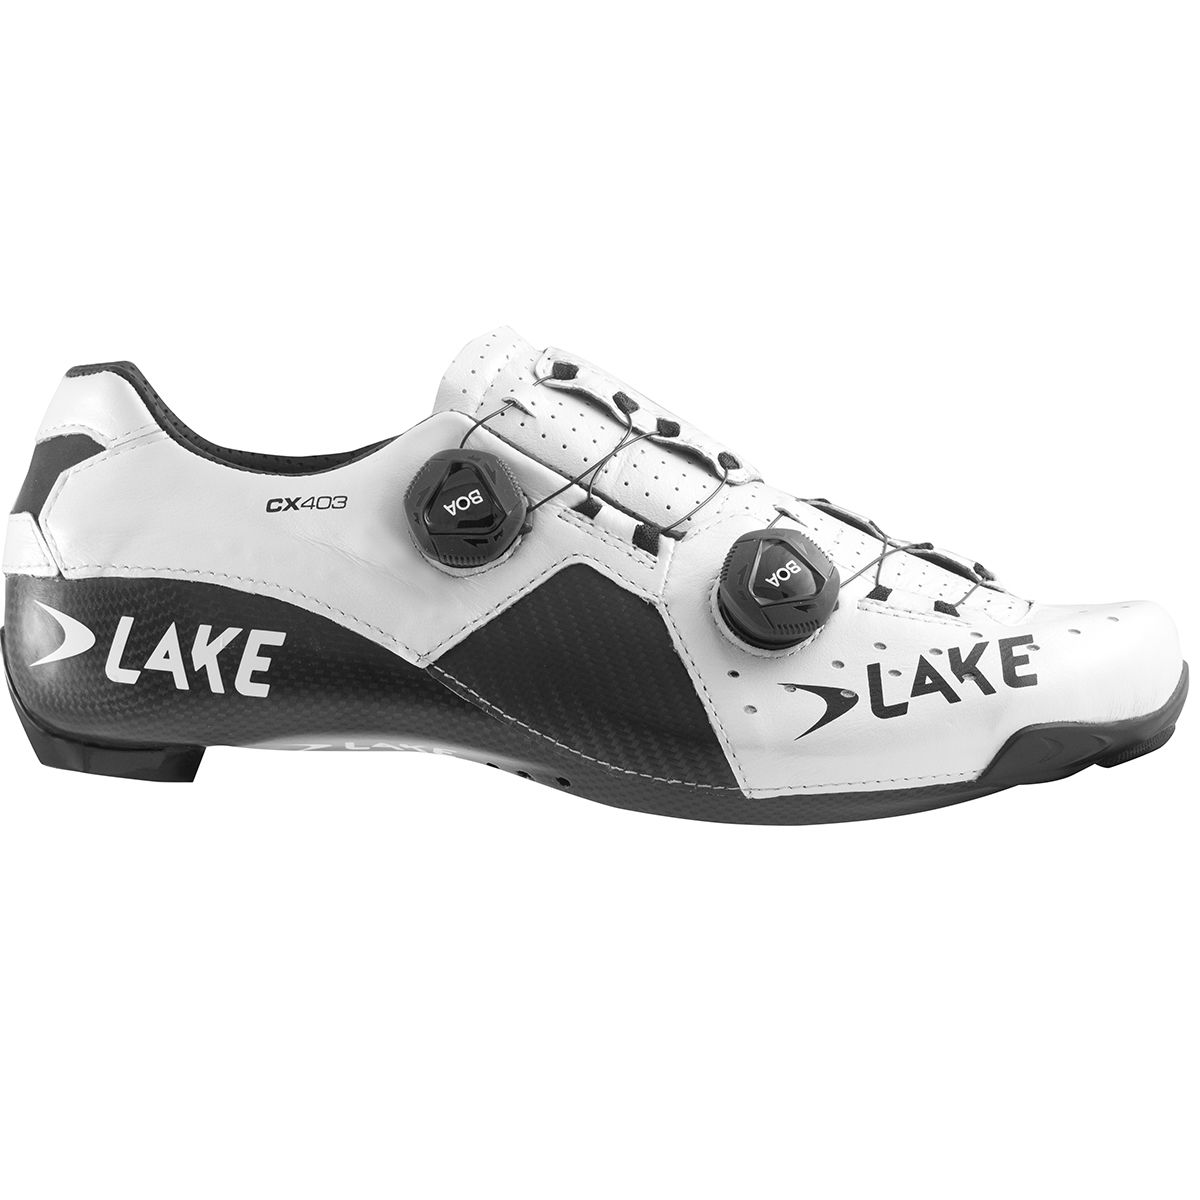 Lake CX403 Cycling Shoe - Men's